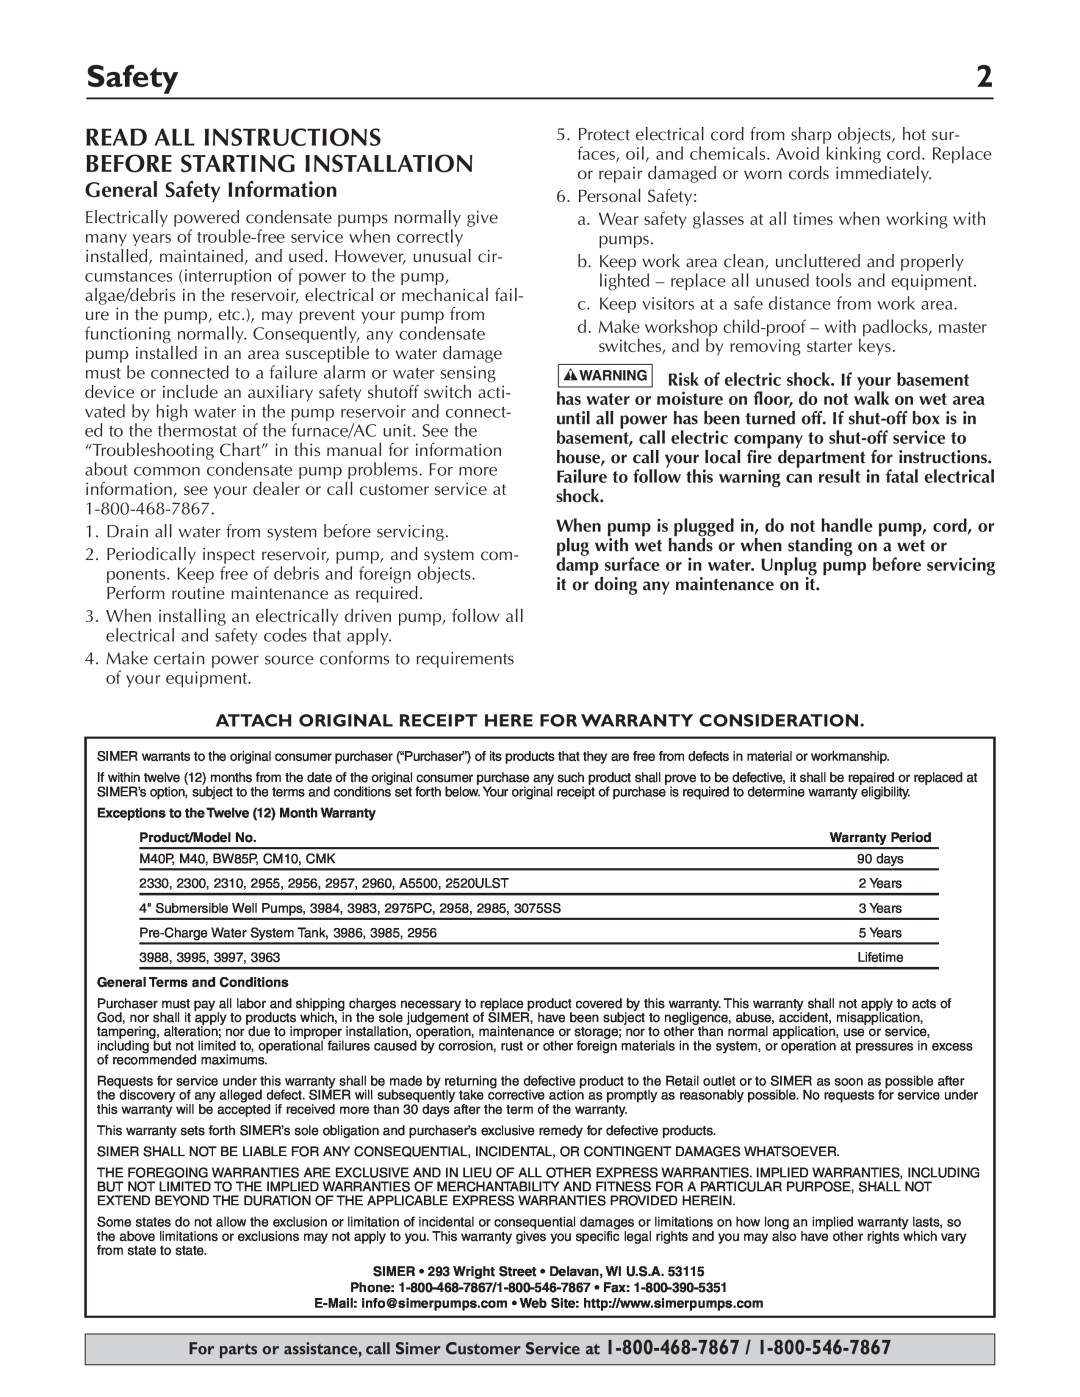 Simer Pumps 2520ULST owner manual General Safety Information 